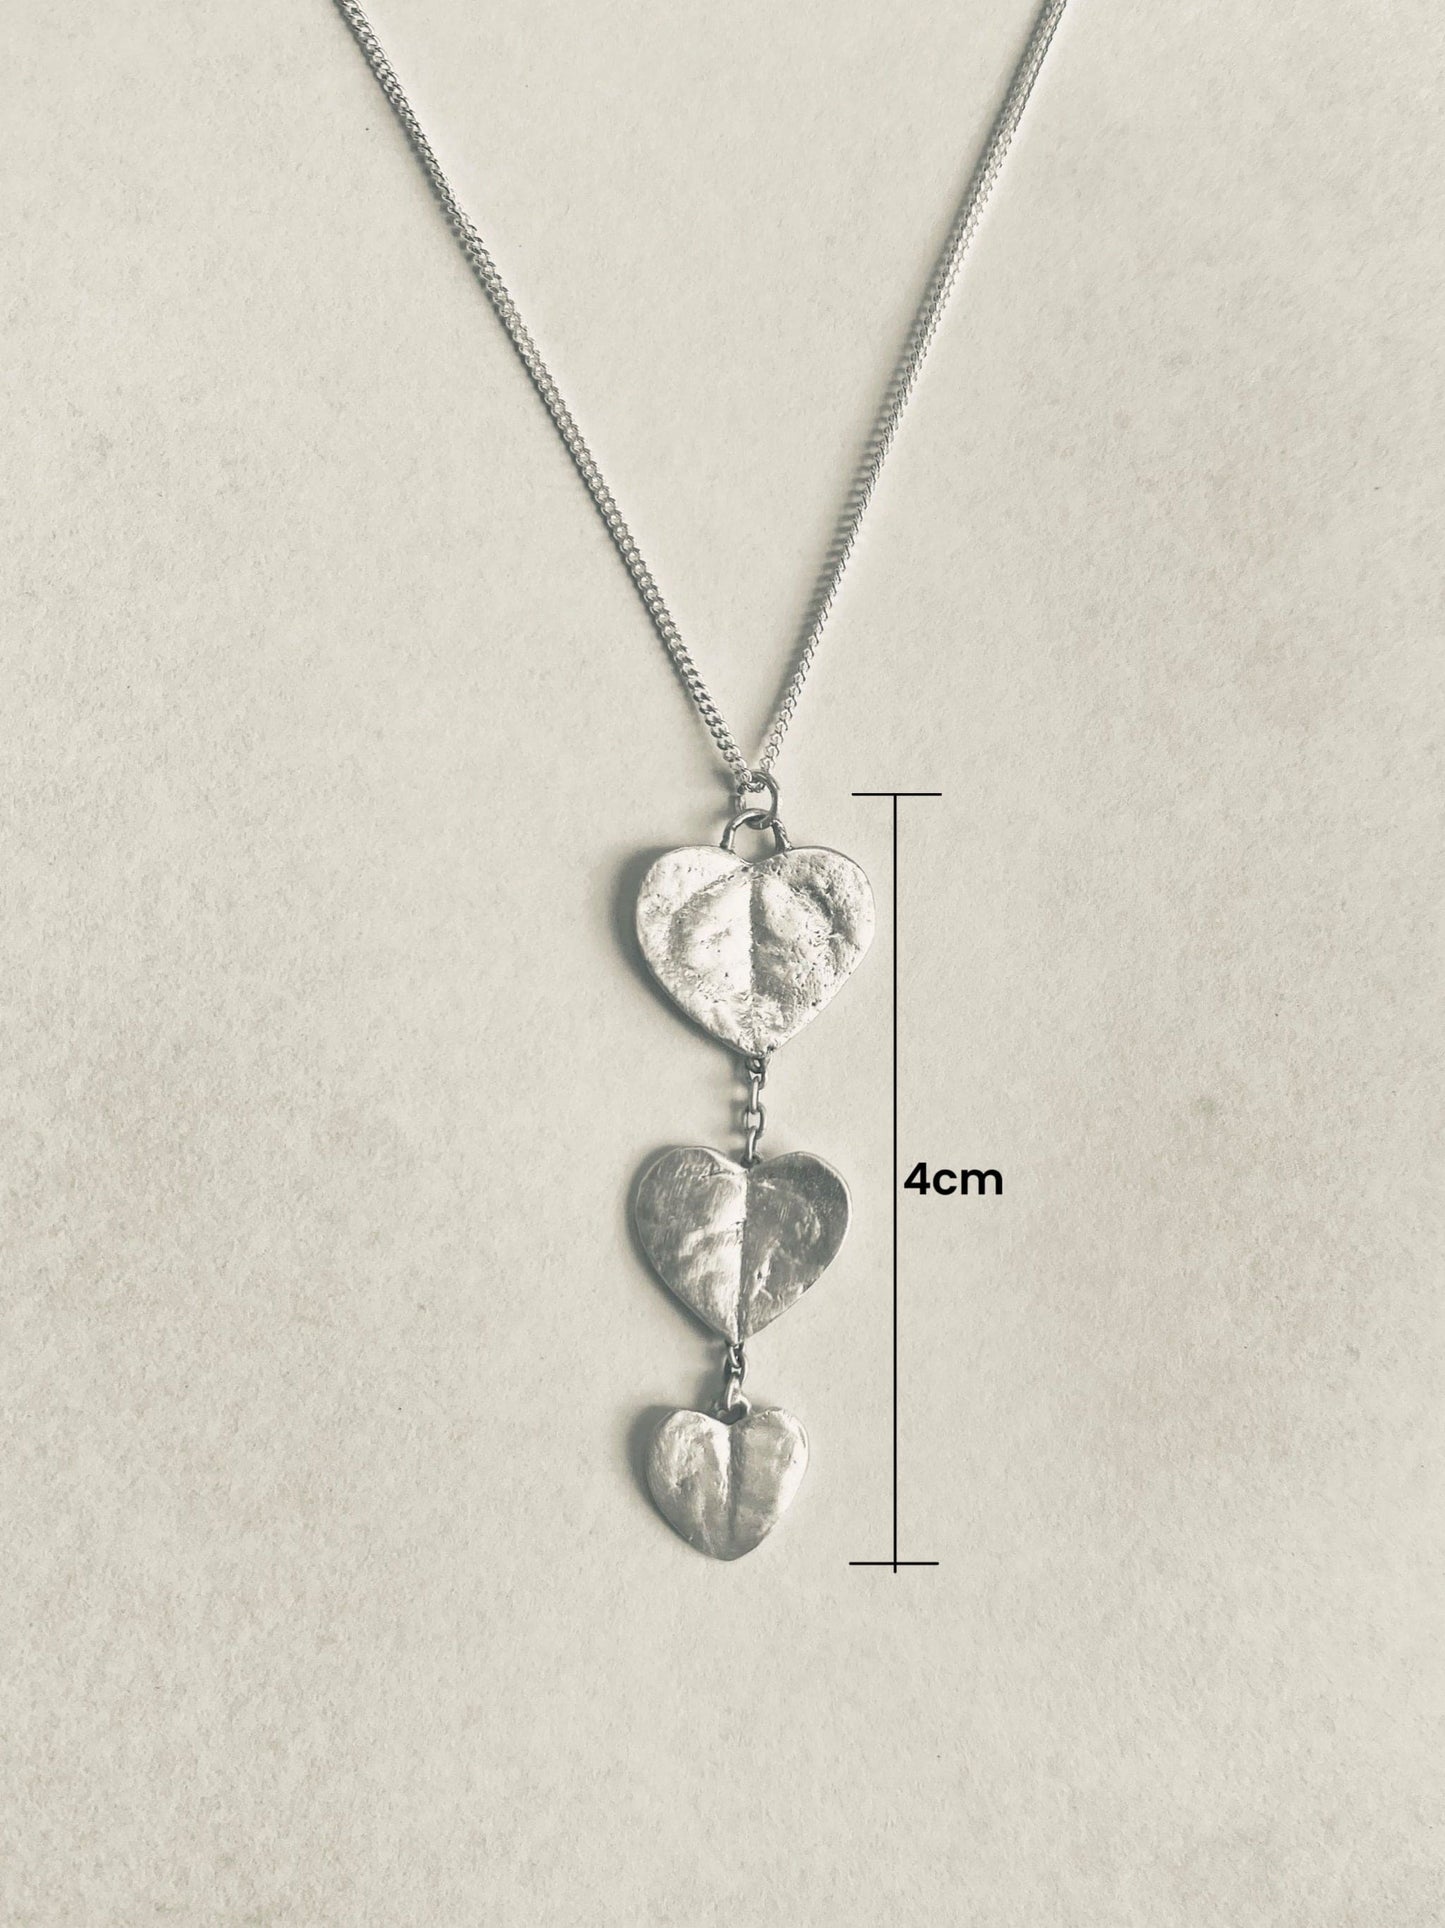 Chain of Hearts silver Pendant